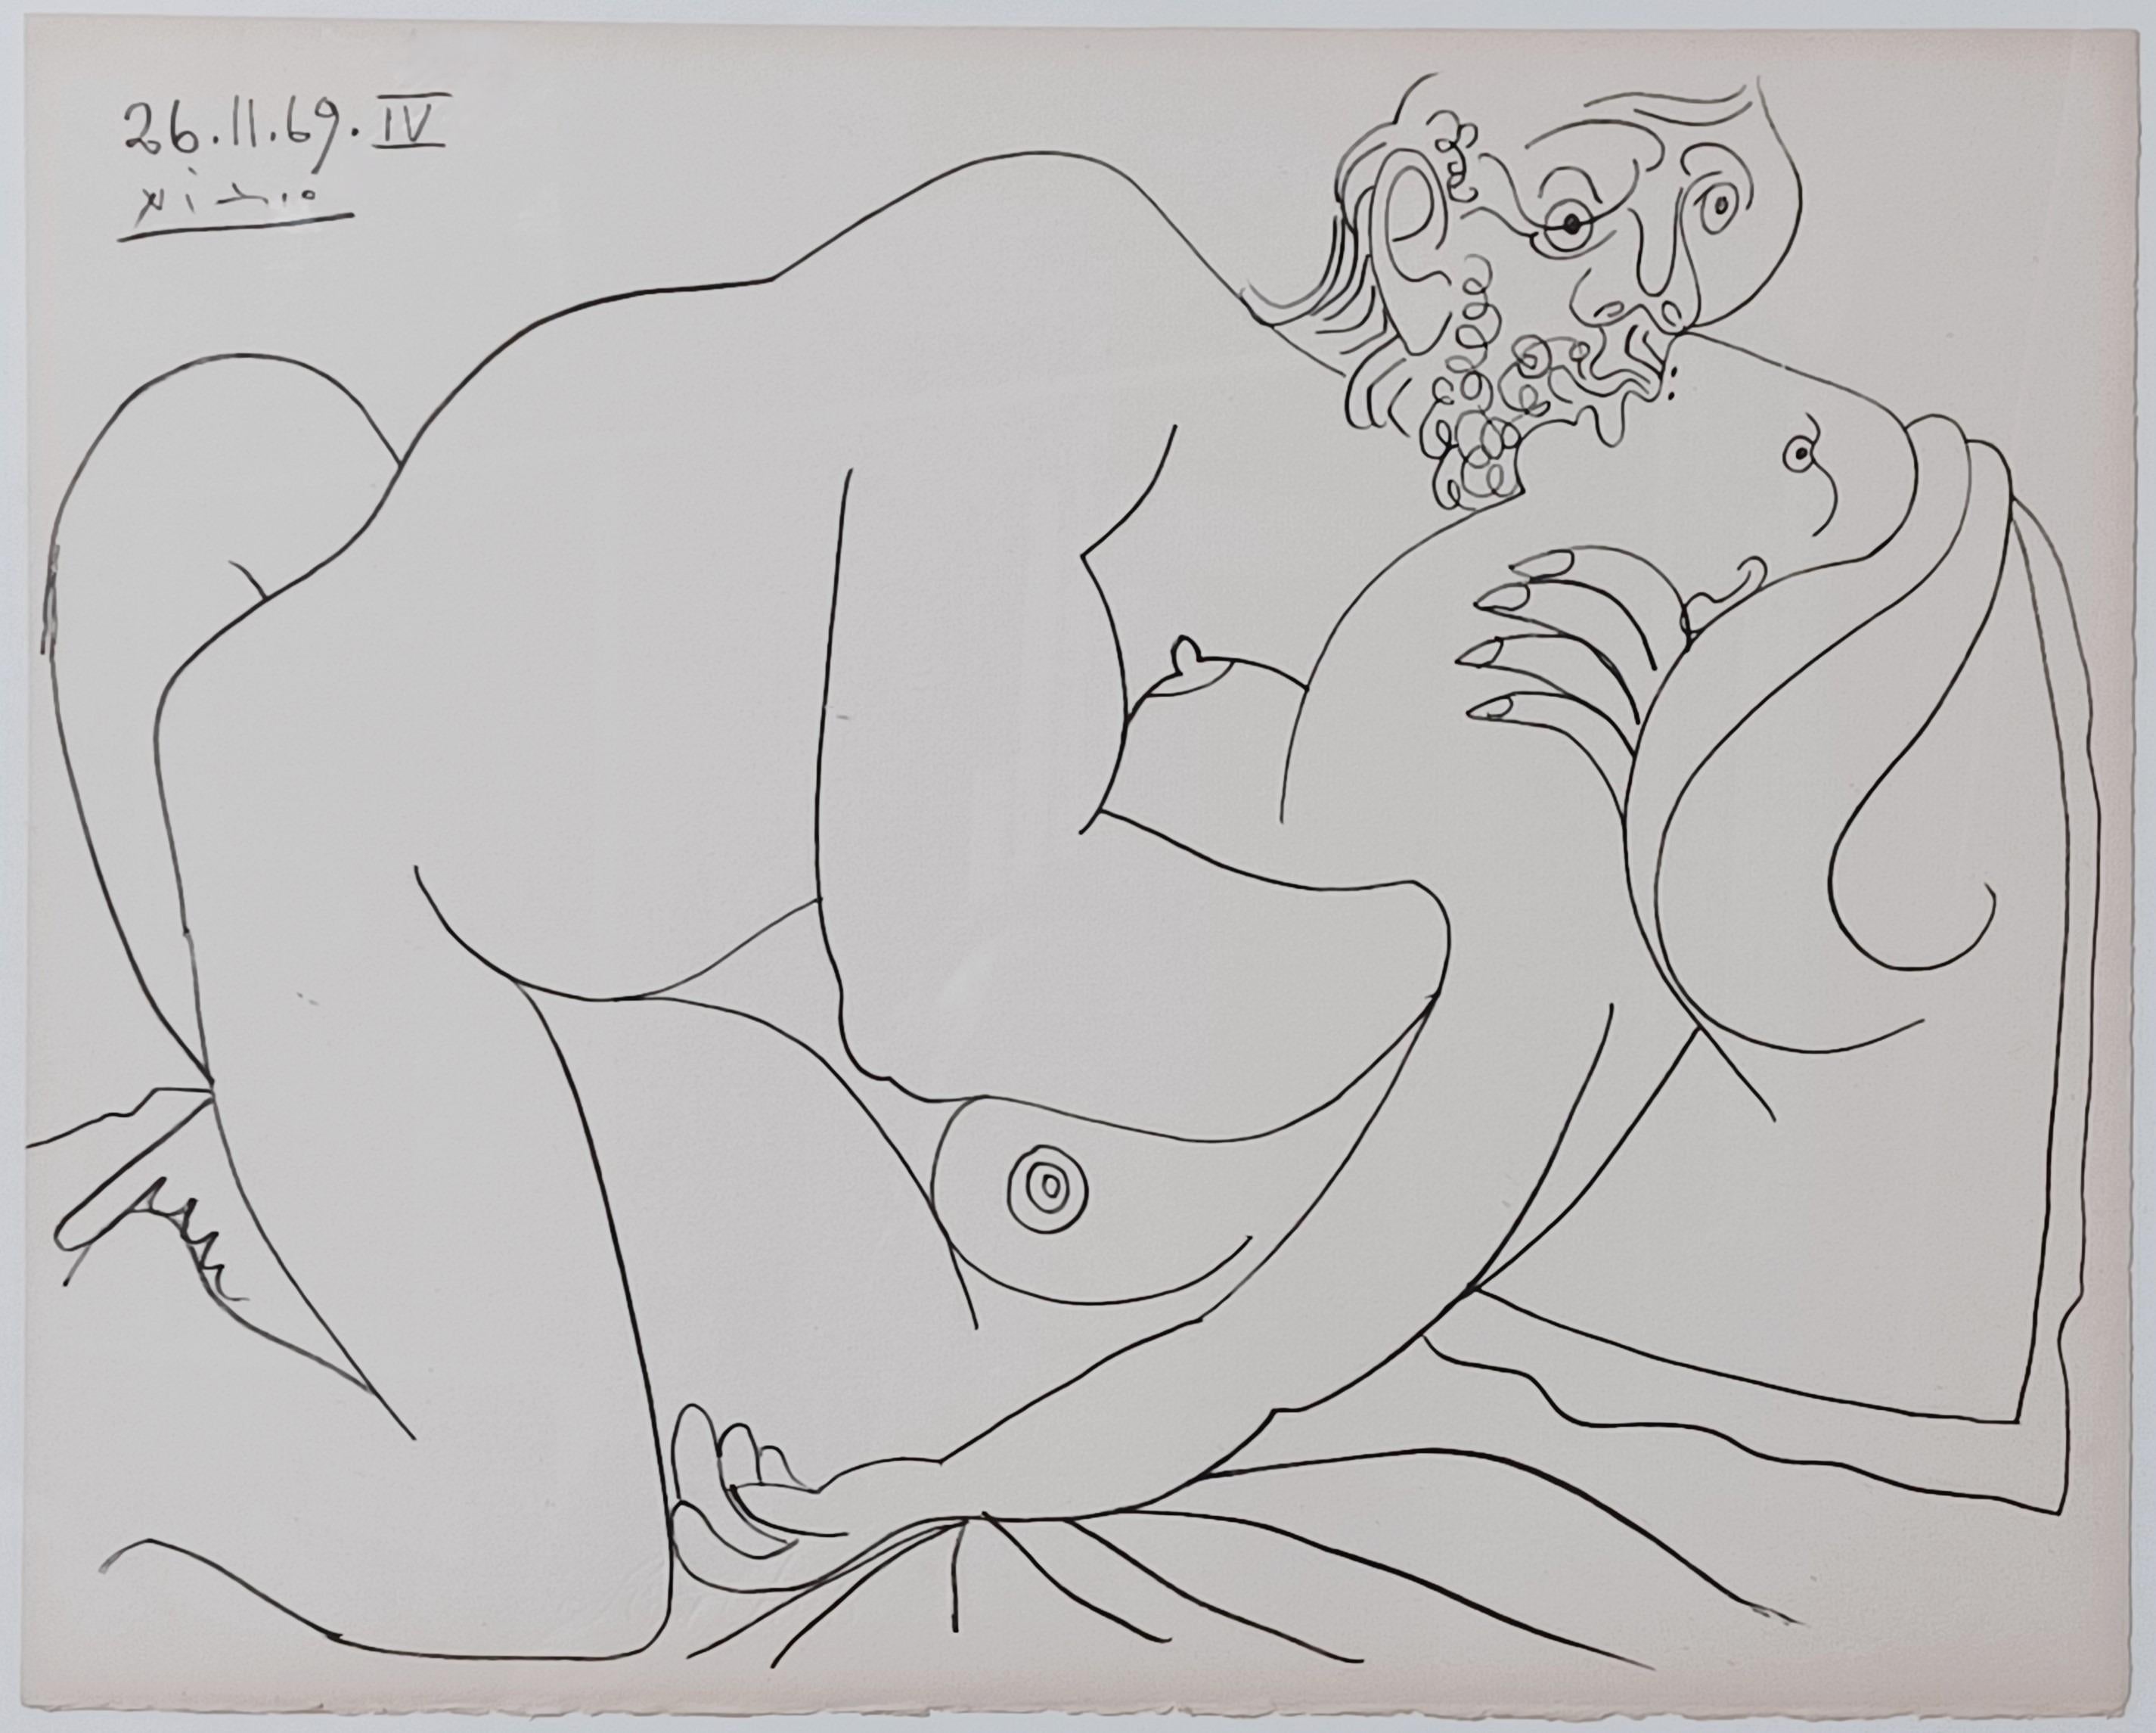 Coppie e nudi femminili IV - Print by Pablo Picasso